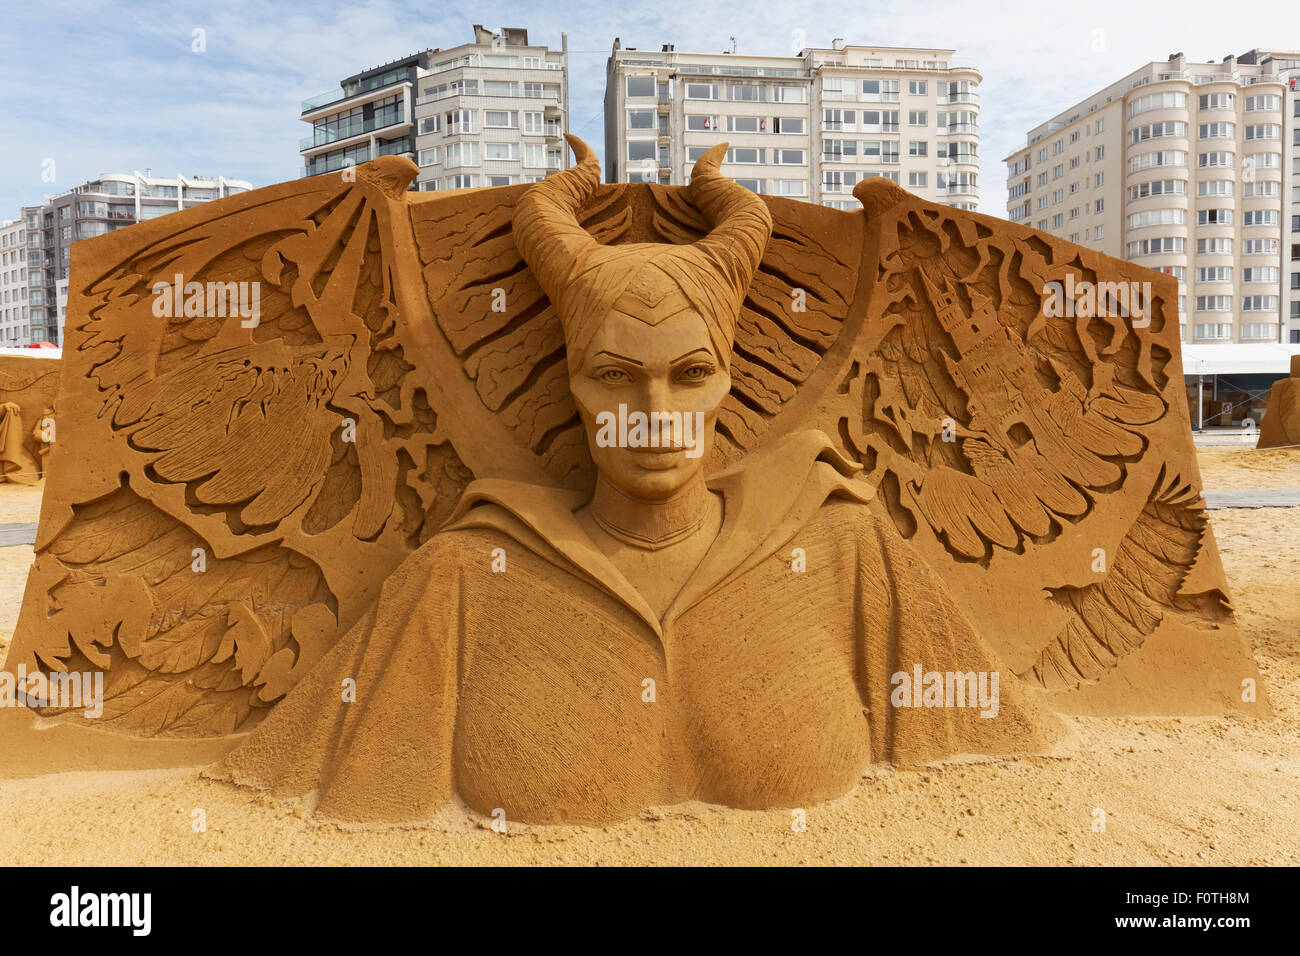 Sculpture de sable, de Walt Disney, maléfique film festival de sculptures de sable, soleil de l'été congelé, Oostende Flandre Occidentale Banque D'Images